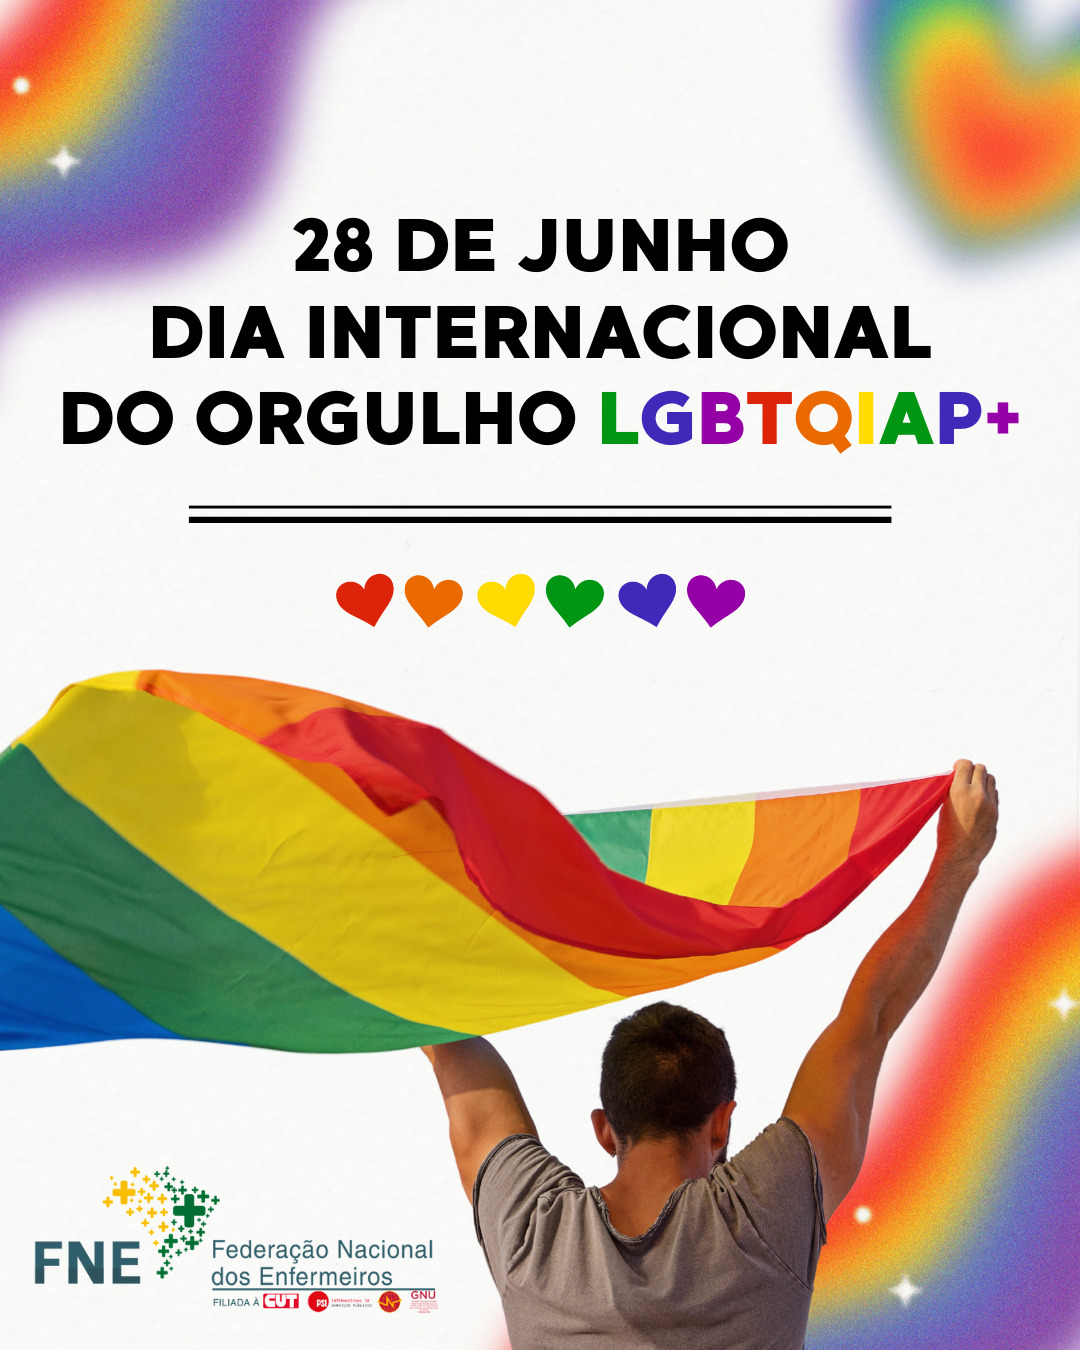 28 de junho - Dia Internacional do Orgulho LGBTQIAP+